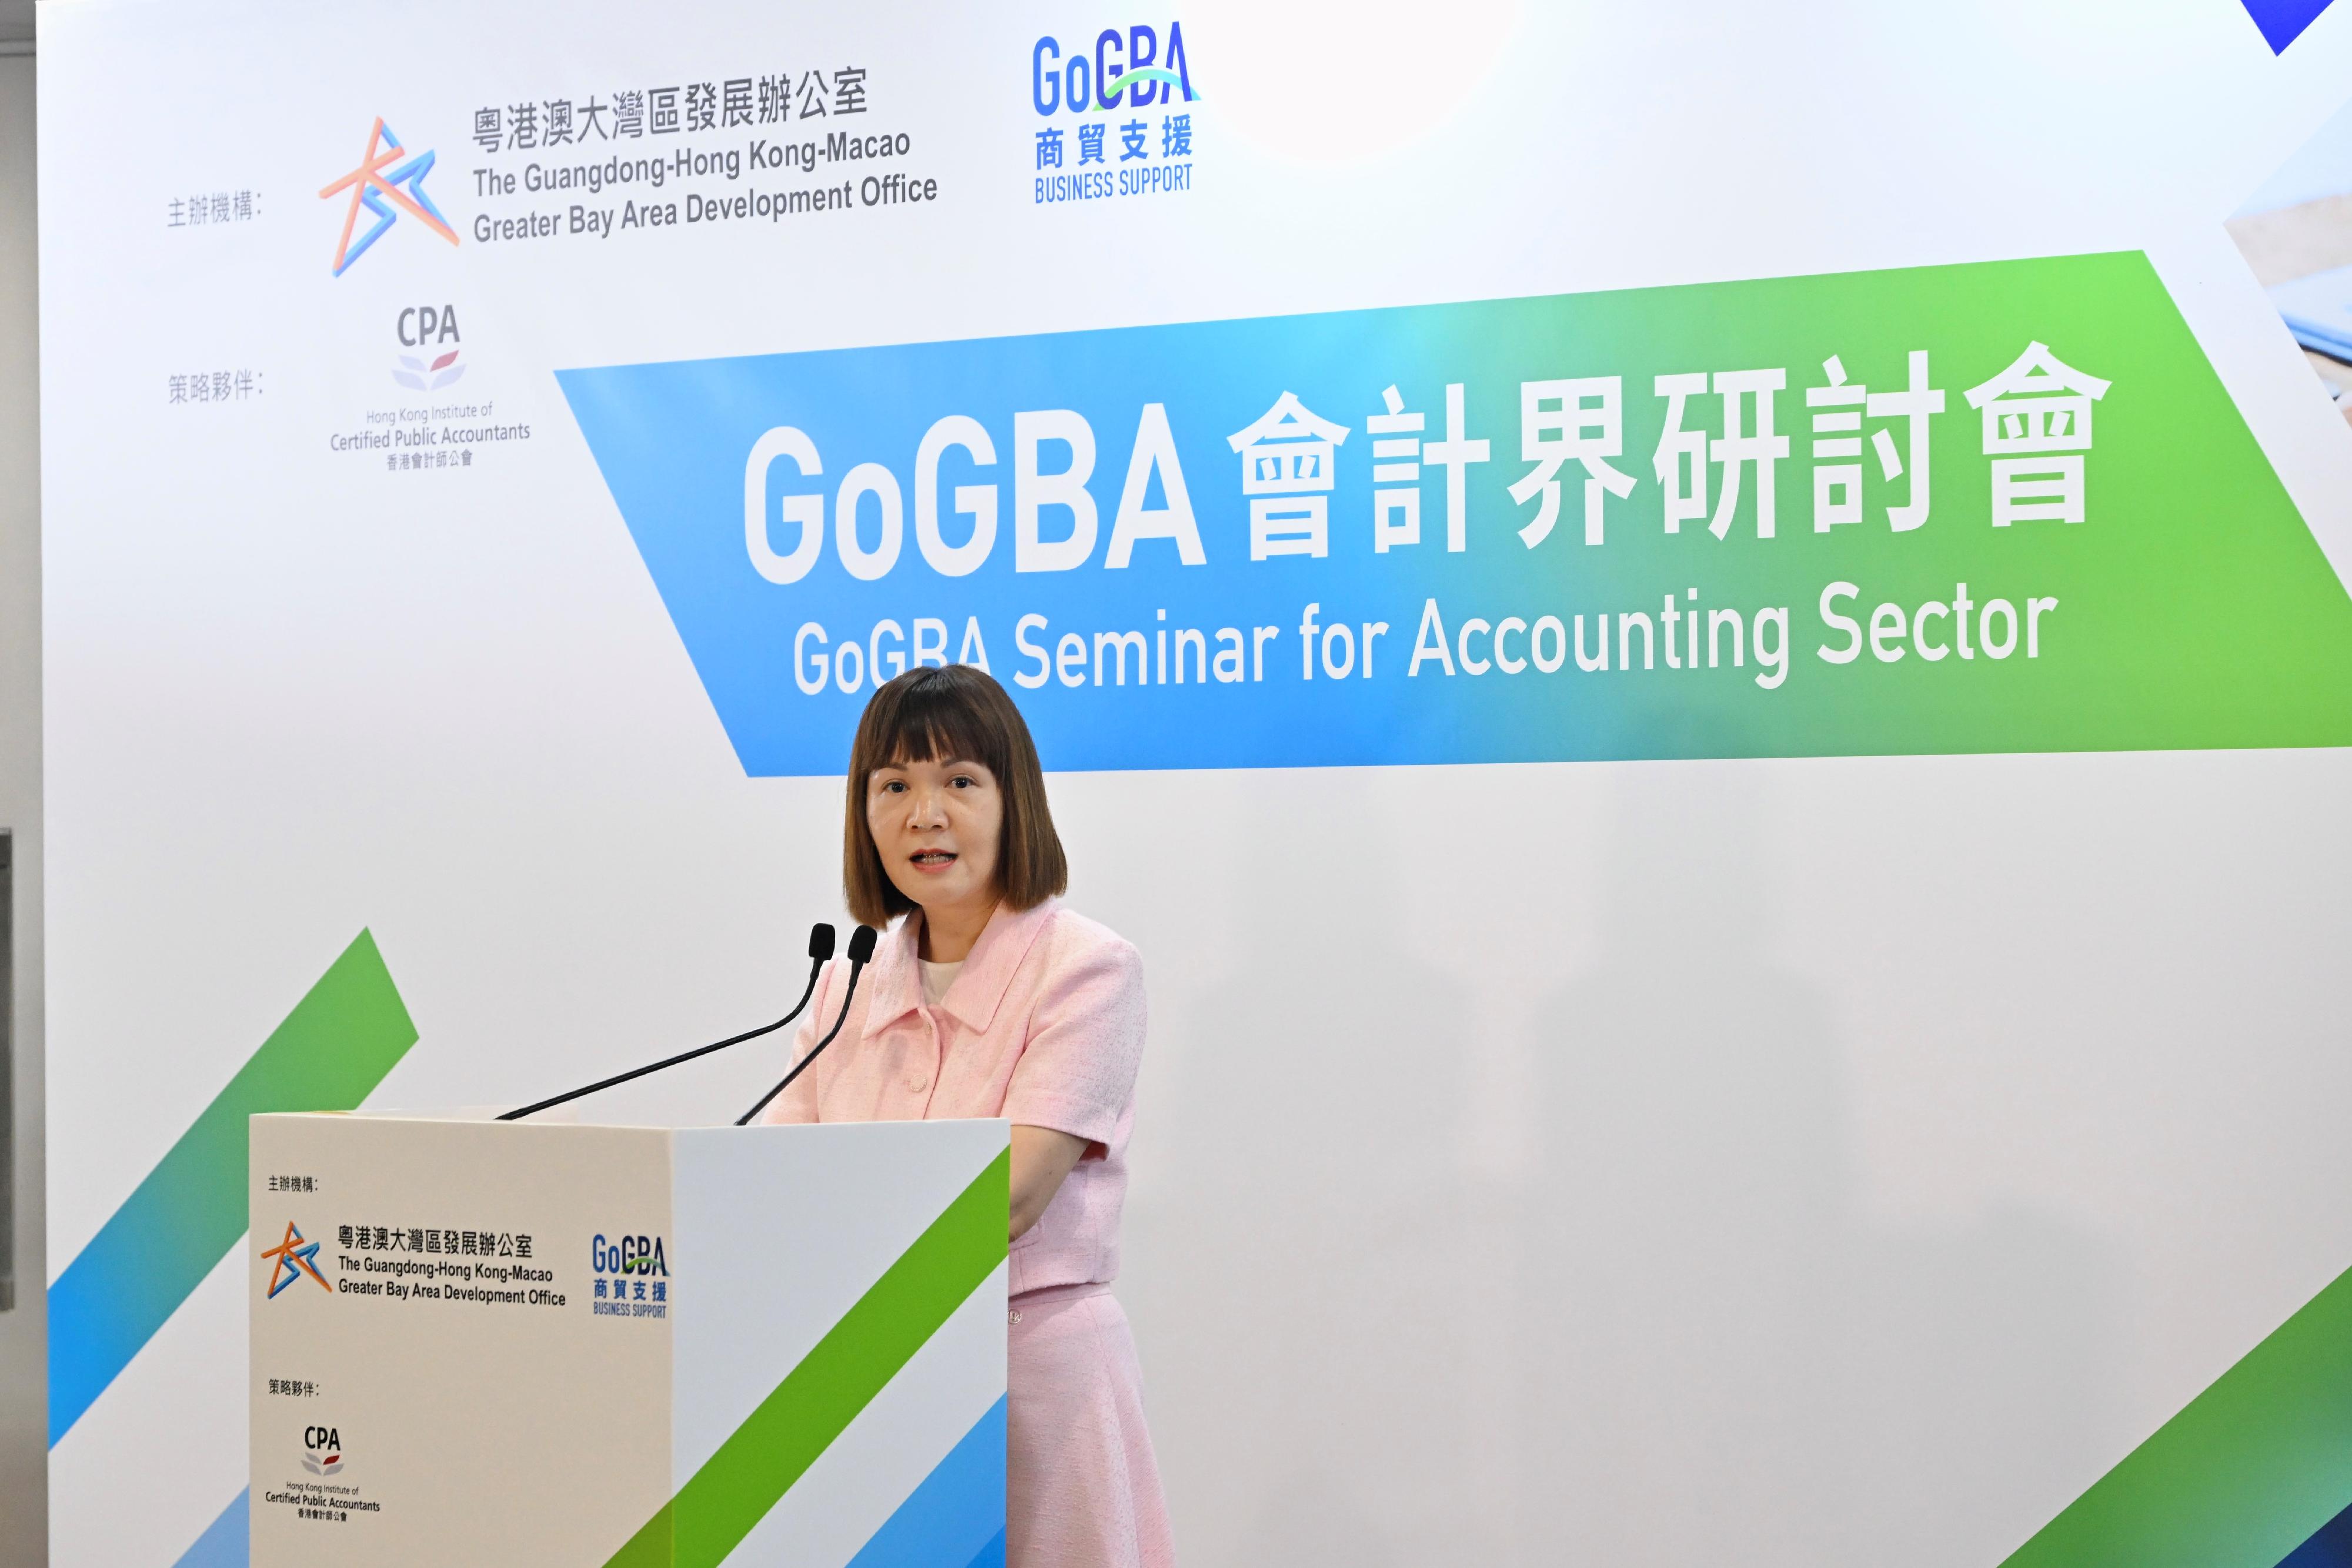 粵港澳大灣區發展專員陳潔玲今日（六月十四日）在「GoGBA會計界研討會」上致辭。